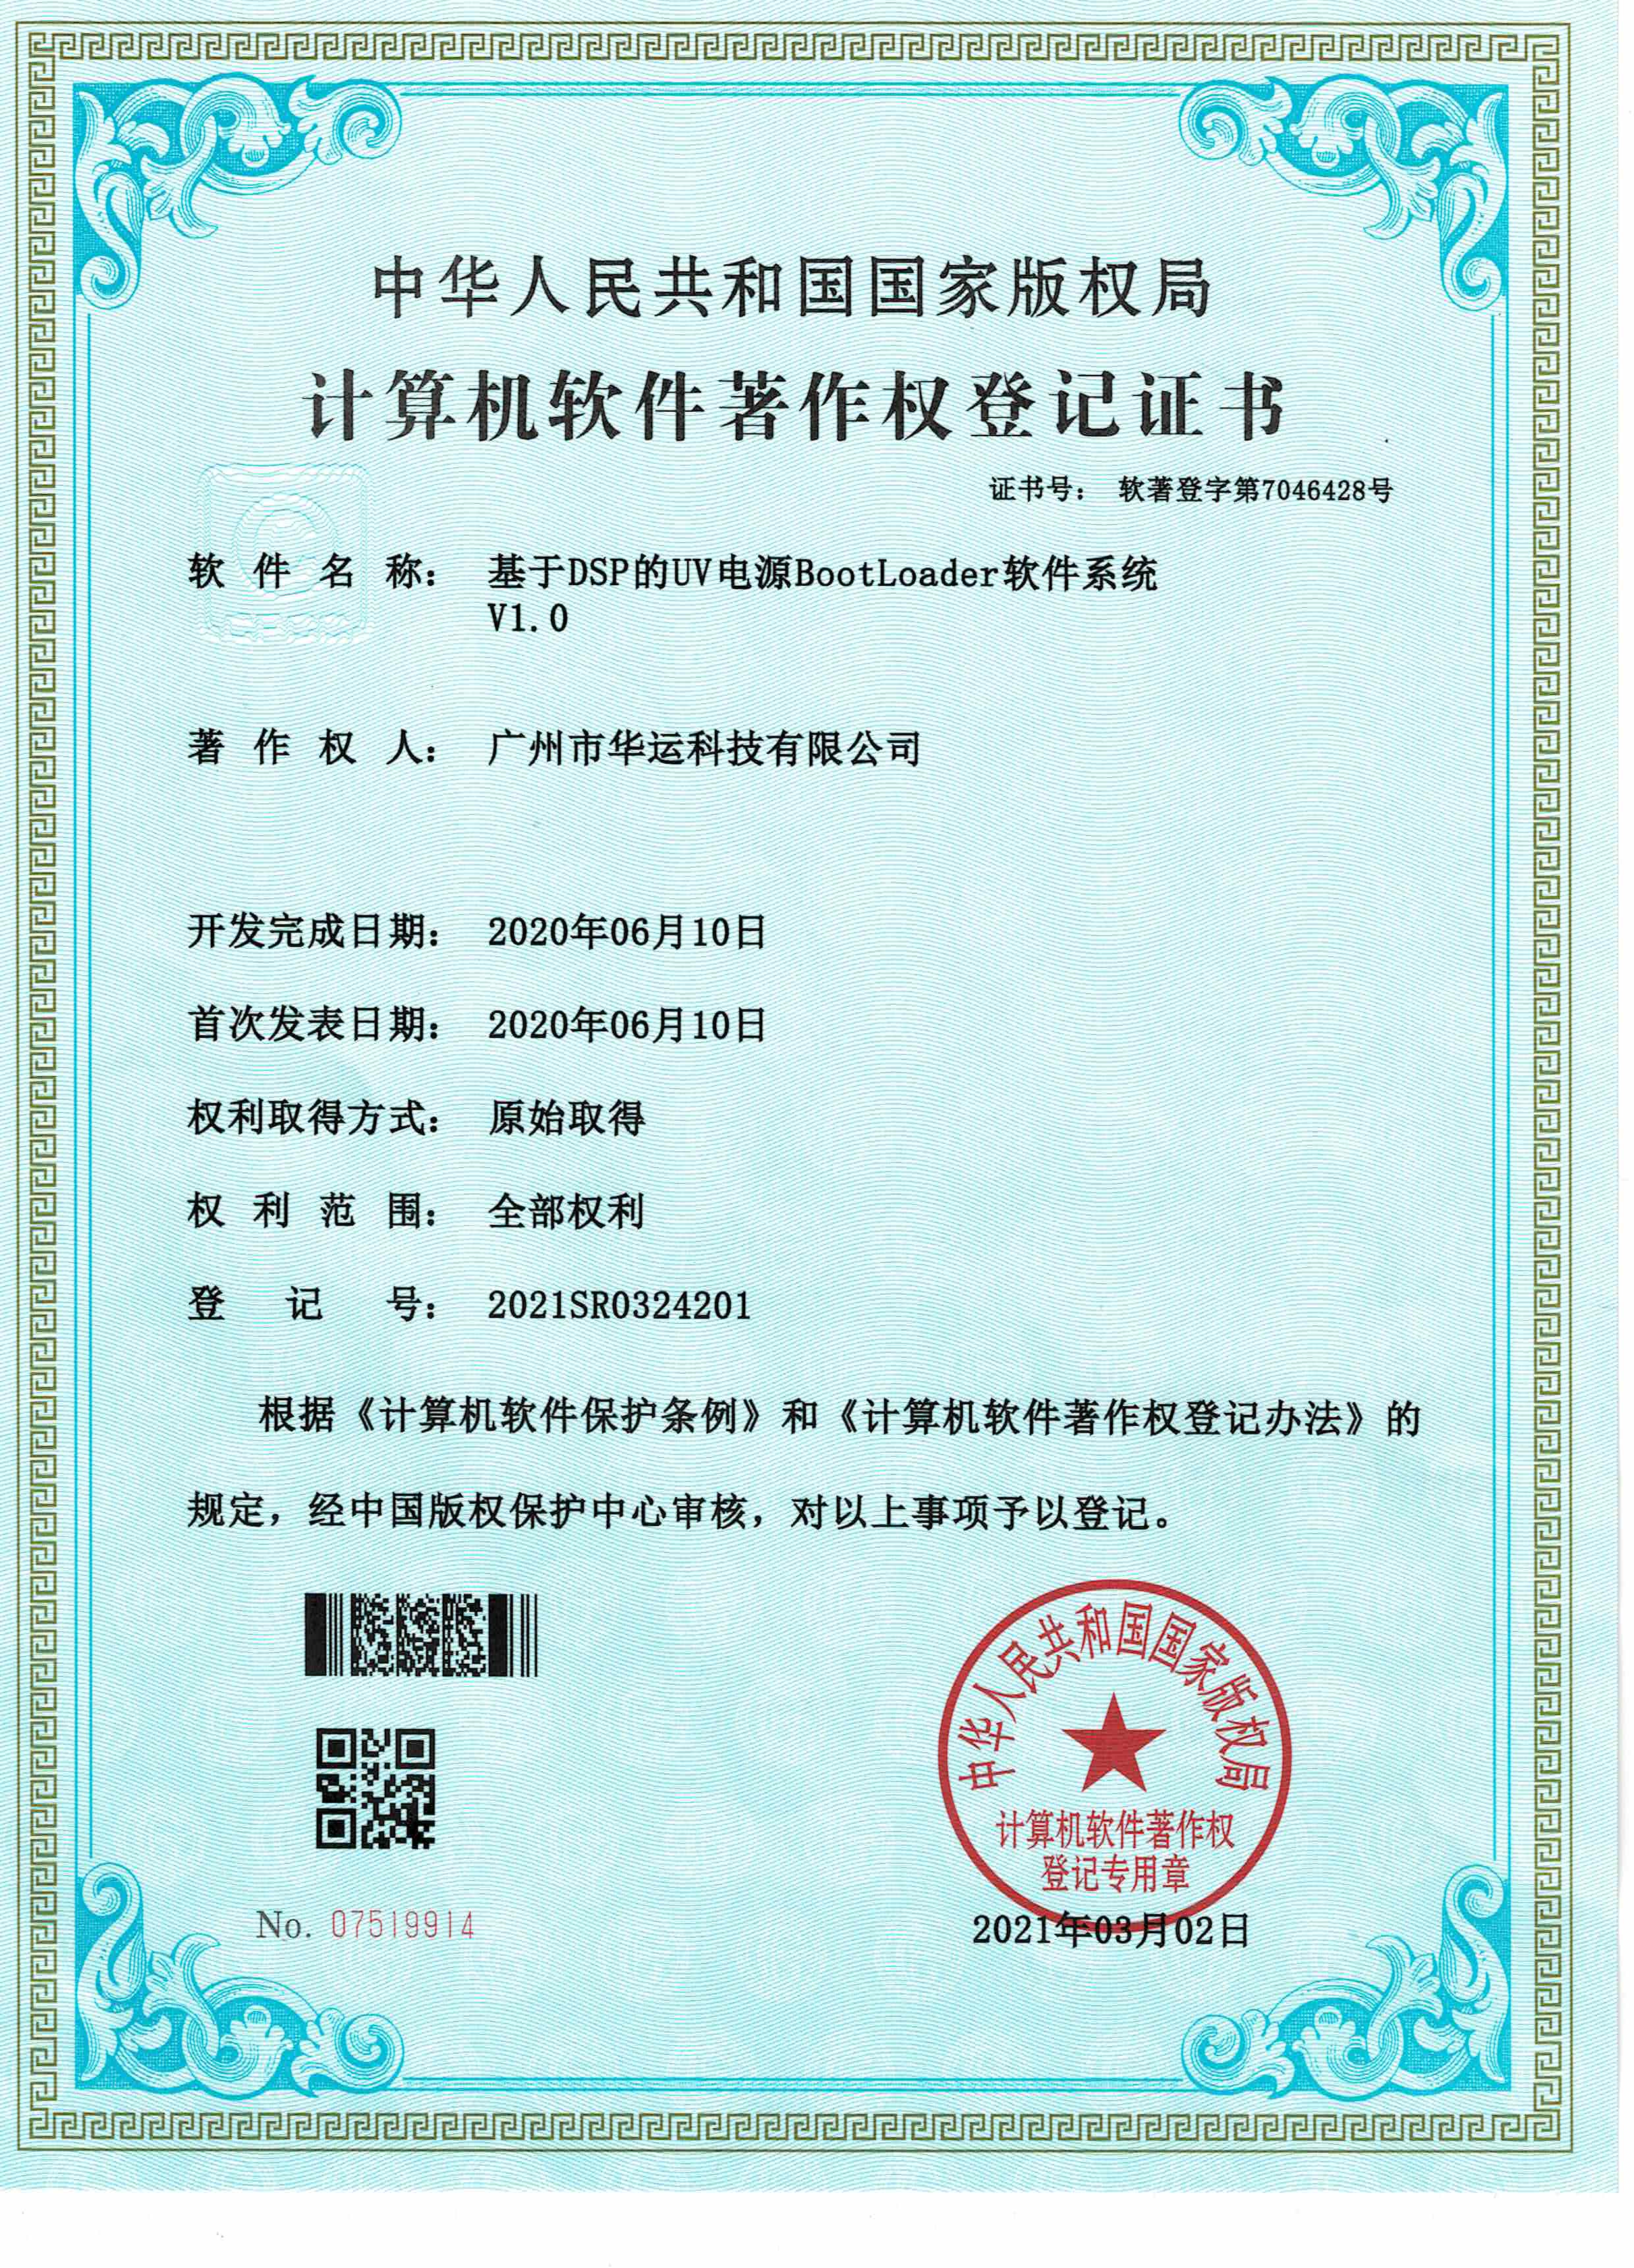 计算机软件著作权登记证书-基于DSP的UV电源BootLoader软件系统 V1.0